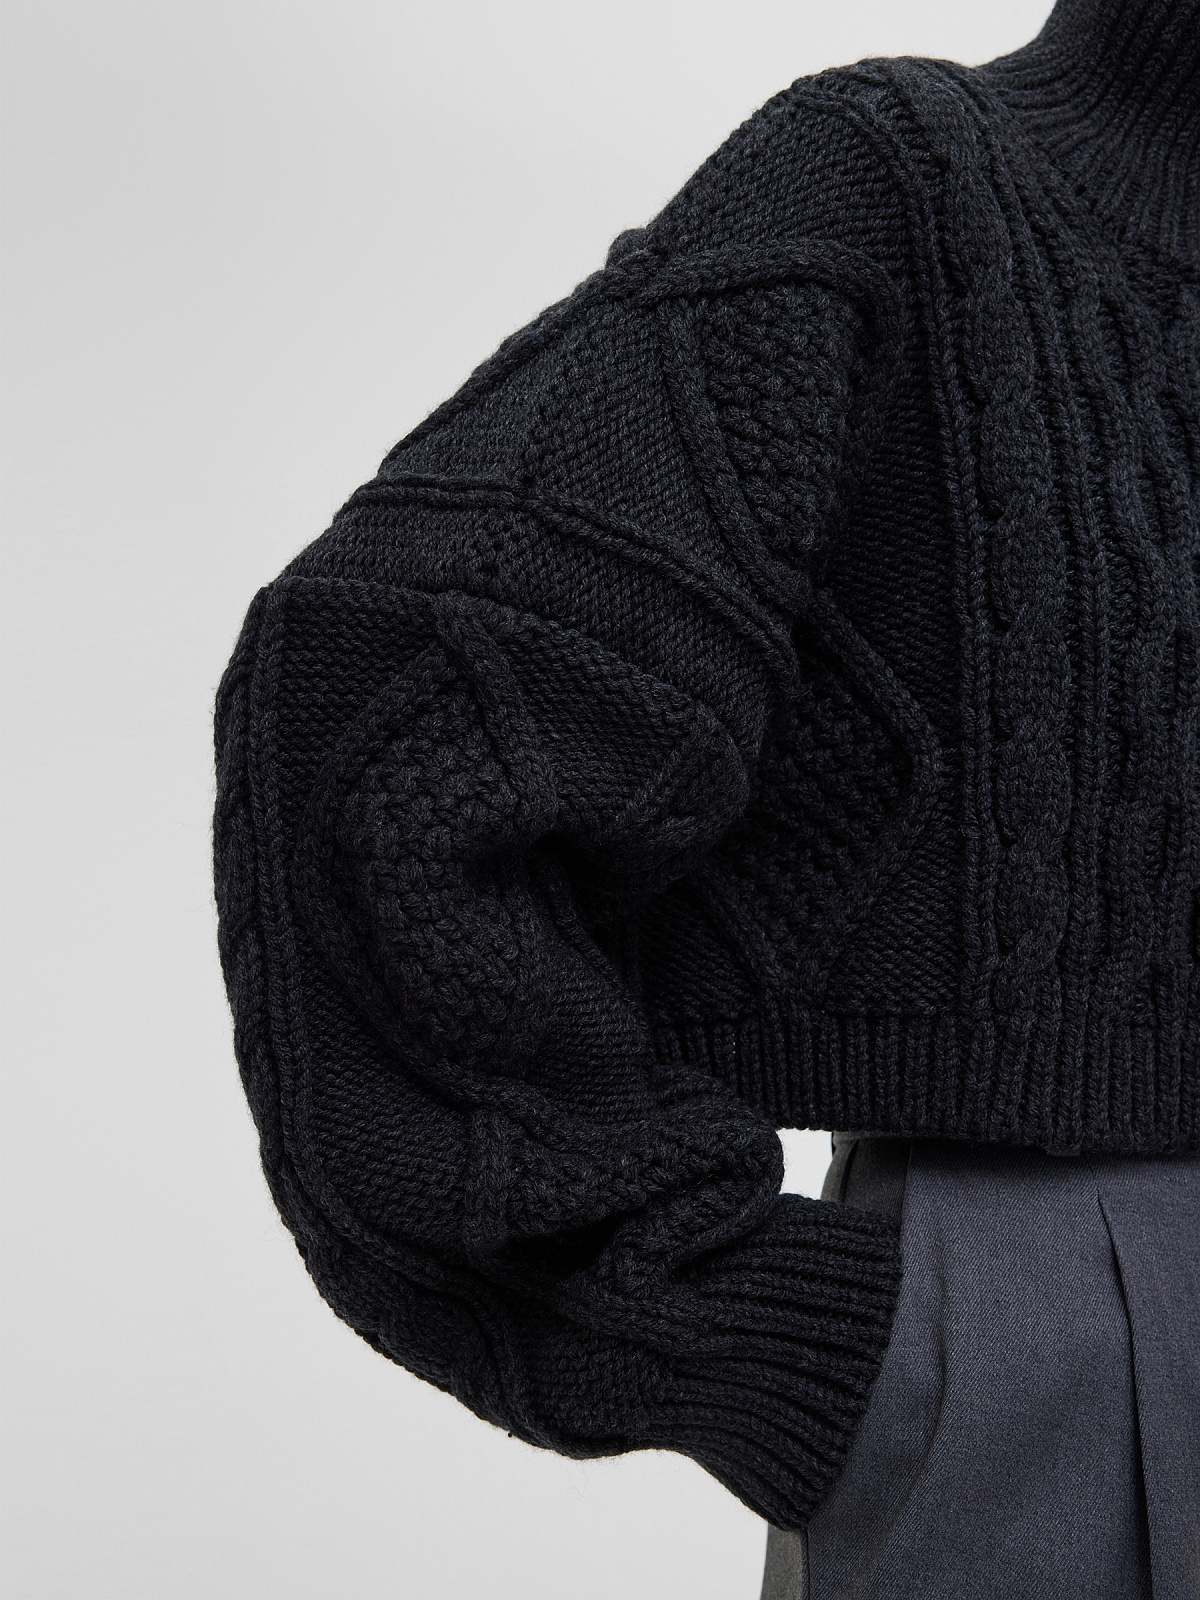 Кроп-свитер крупной вязки с аранами, антрацит